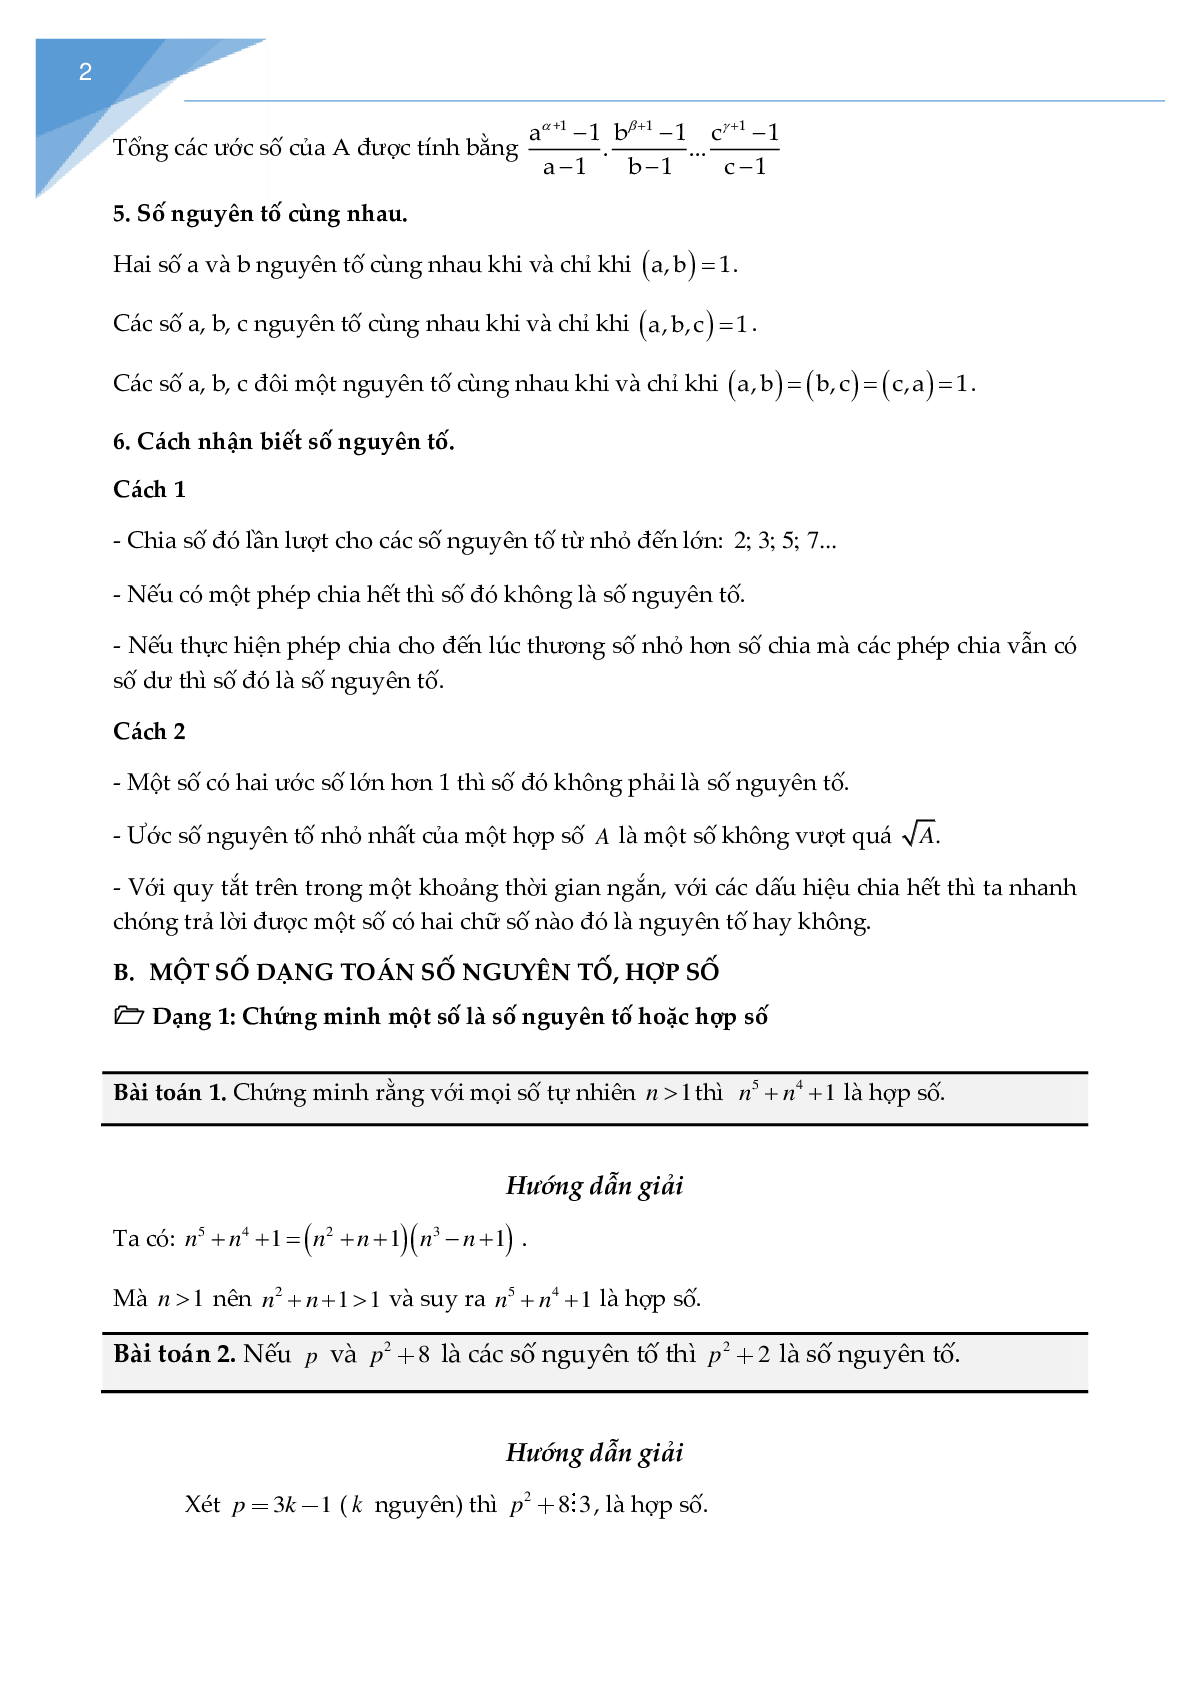 Chuyên đề Số nguyên tố, hợp số (trang 2)